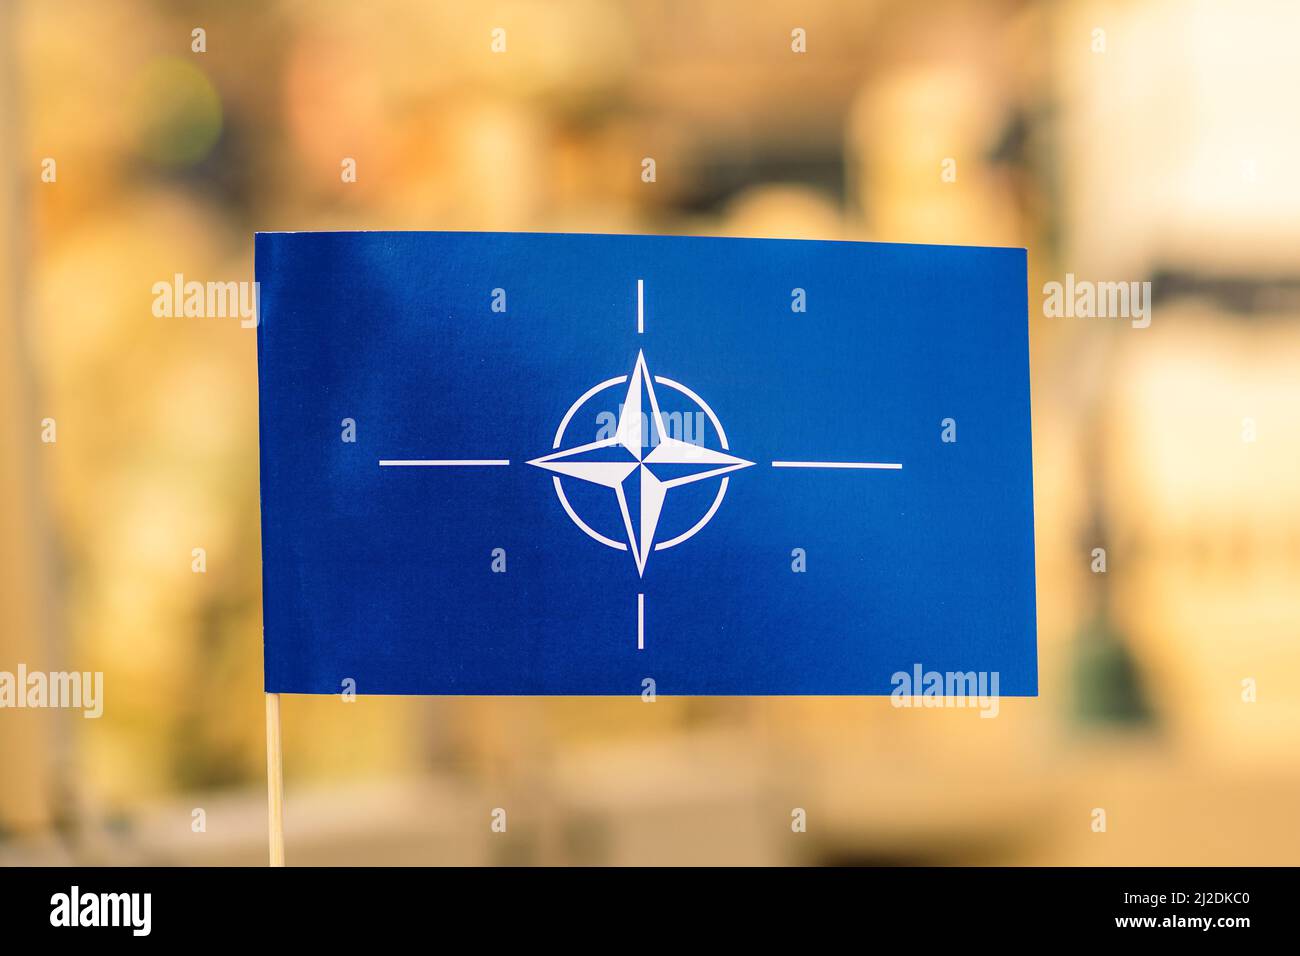 Flagge und Symbol der NATO, Organisation des Nordatlantikvertrags, Einheit für die Integration von Truppen mit unfokussischem Hintergrund Stockfoto